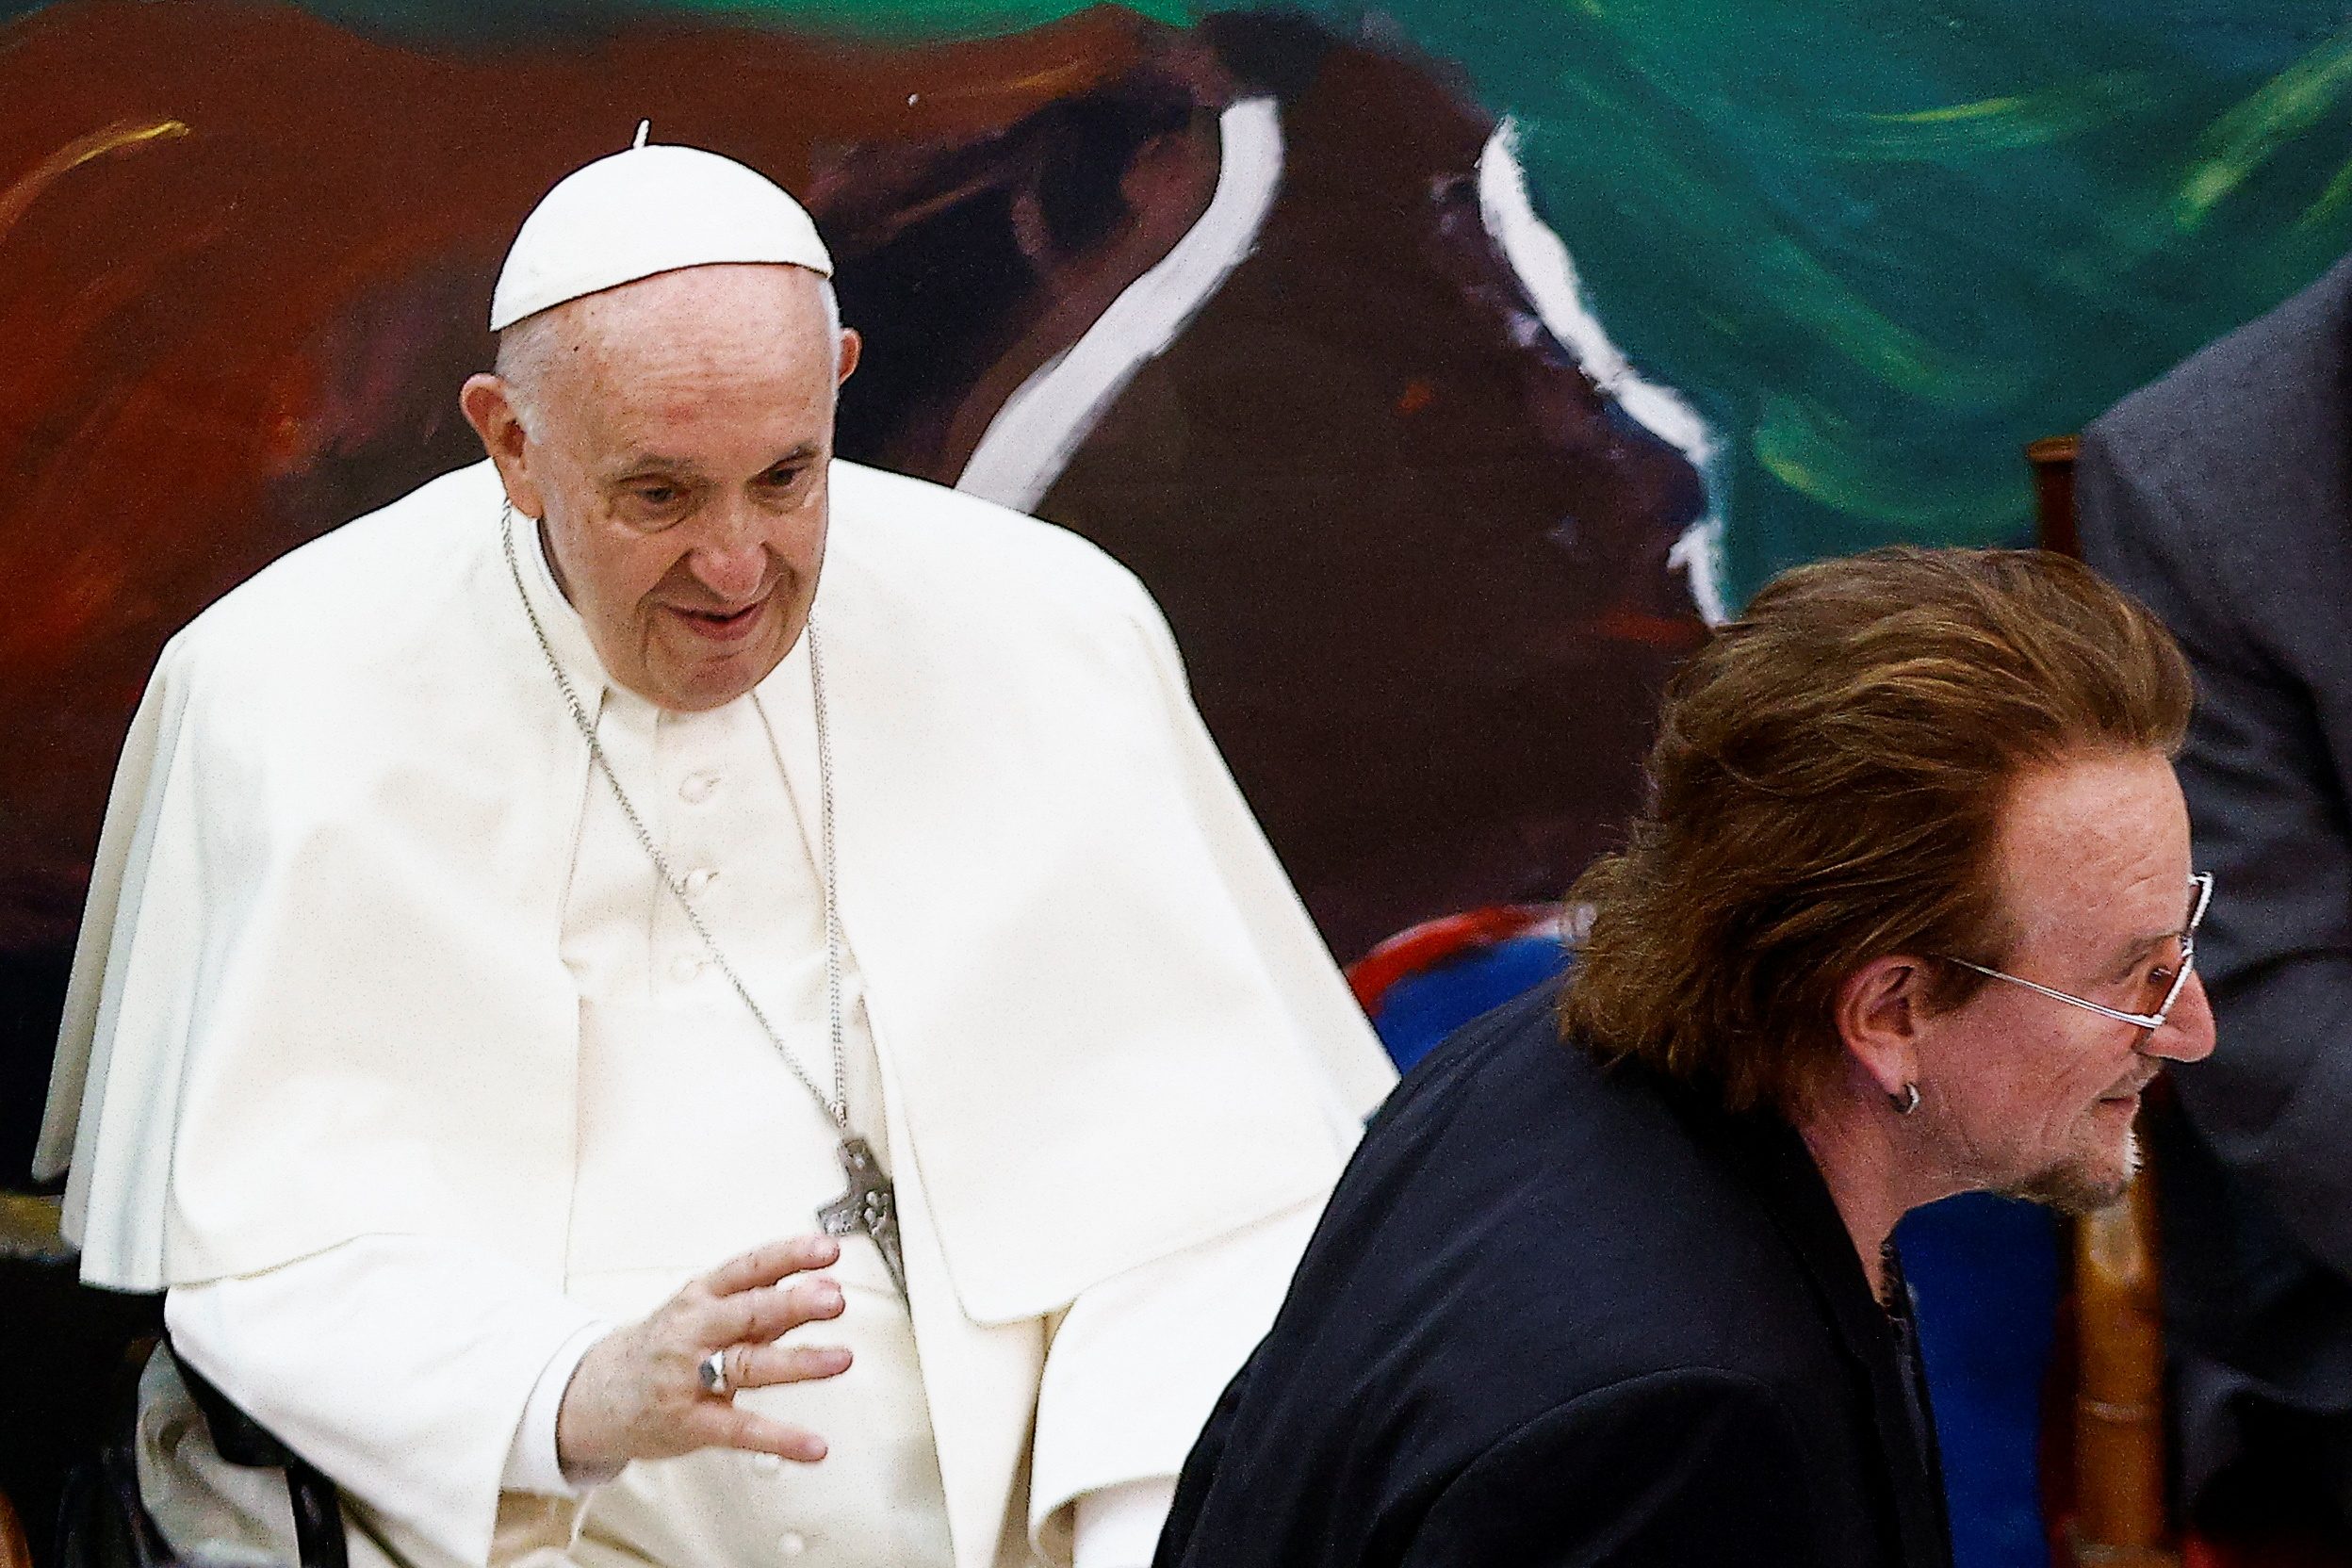 U2’s Bono and Pope Francis ‘harmonize’ on climate change, girls’ education